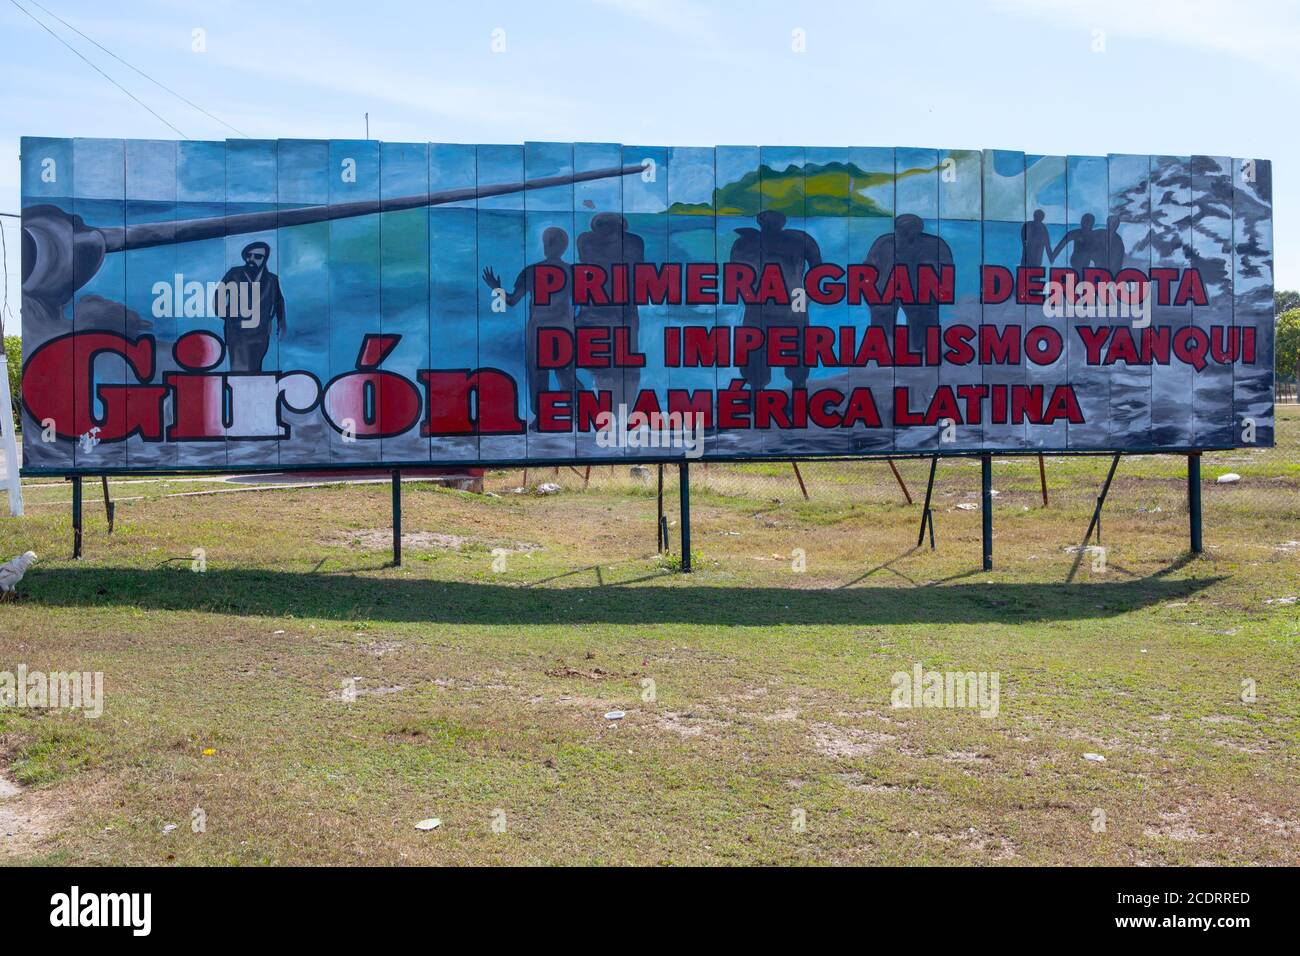 Playa Girón, Cuba, 16 décembre 2016: Grand panneau d'affichage à Giron avec propagande de victoire /Baie des cochons. Banque D'Images